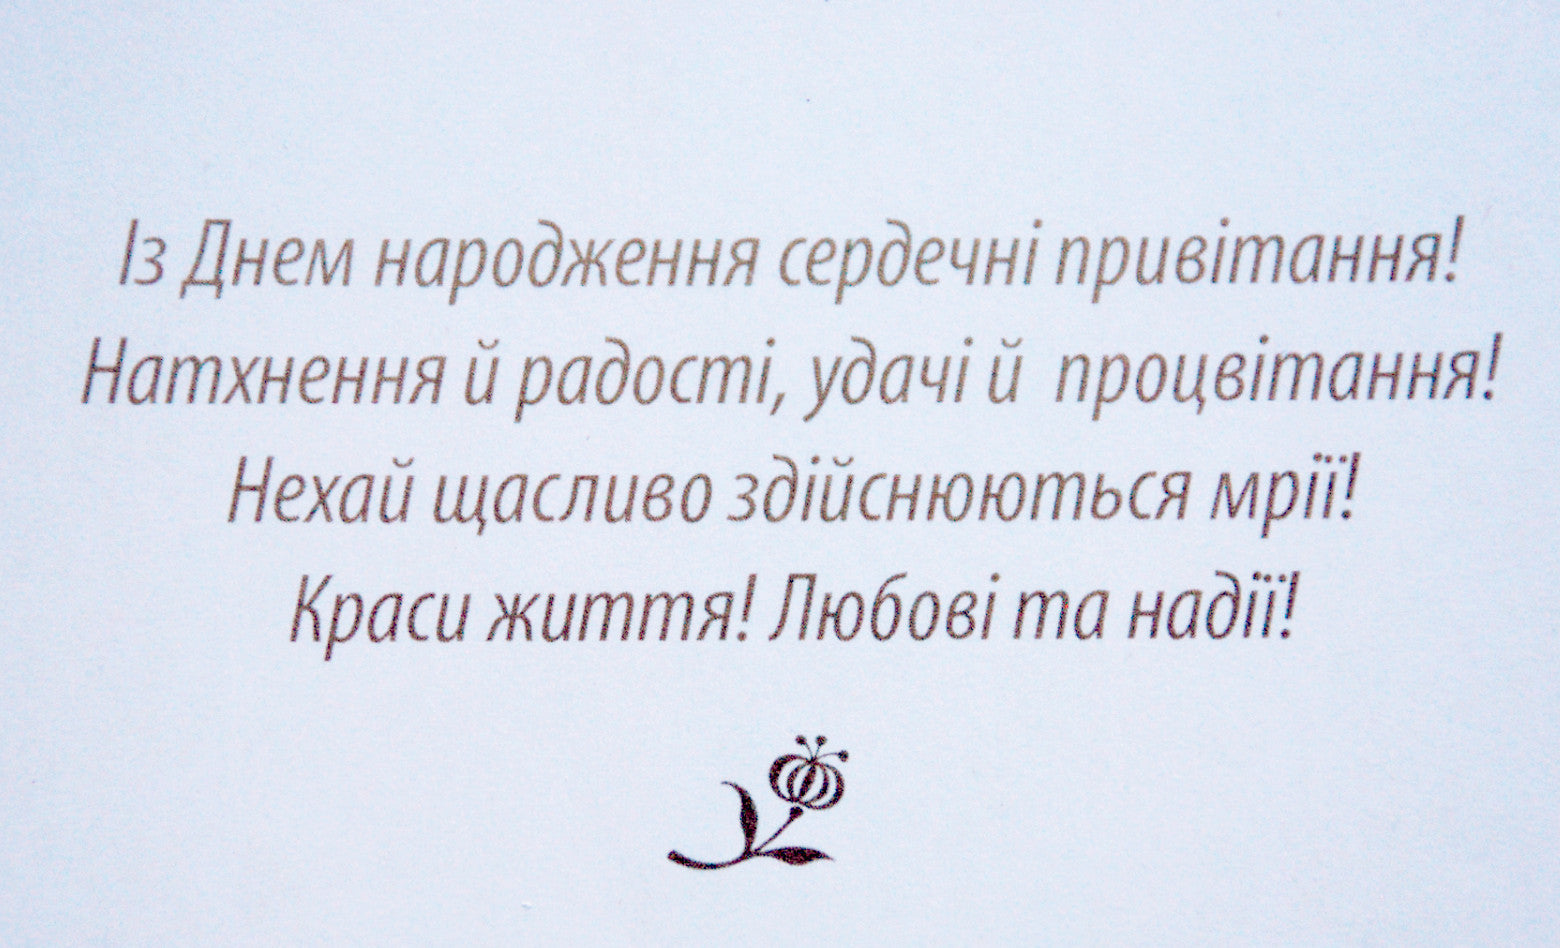 Greeting card "З Днем Народження!" Wild flowers